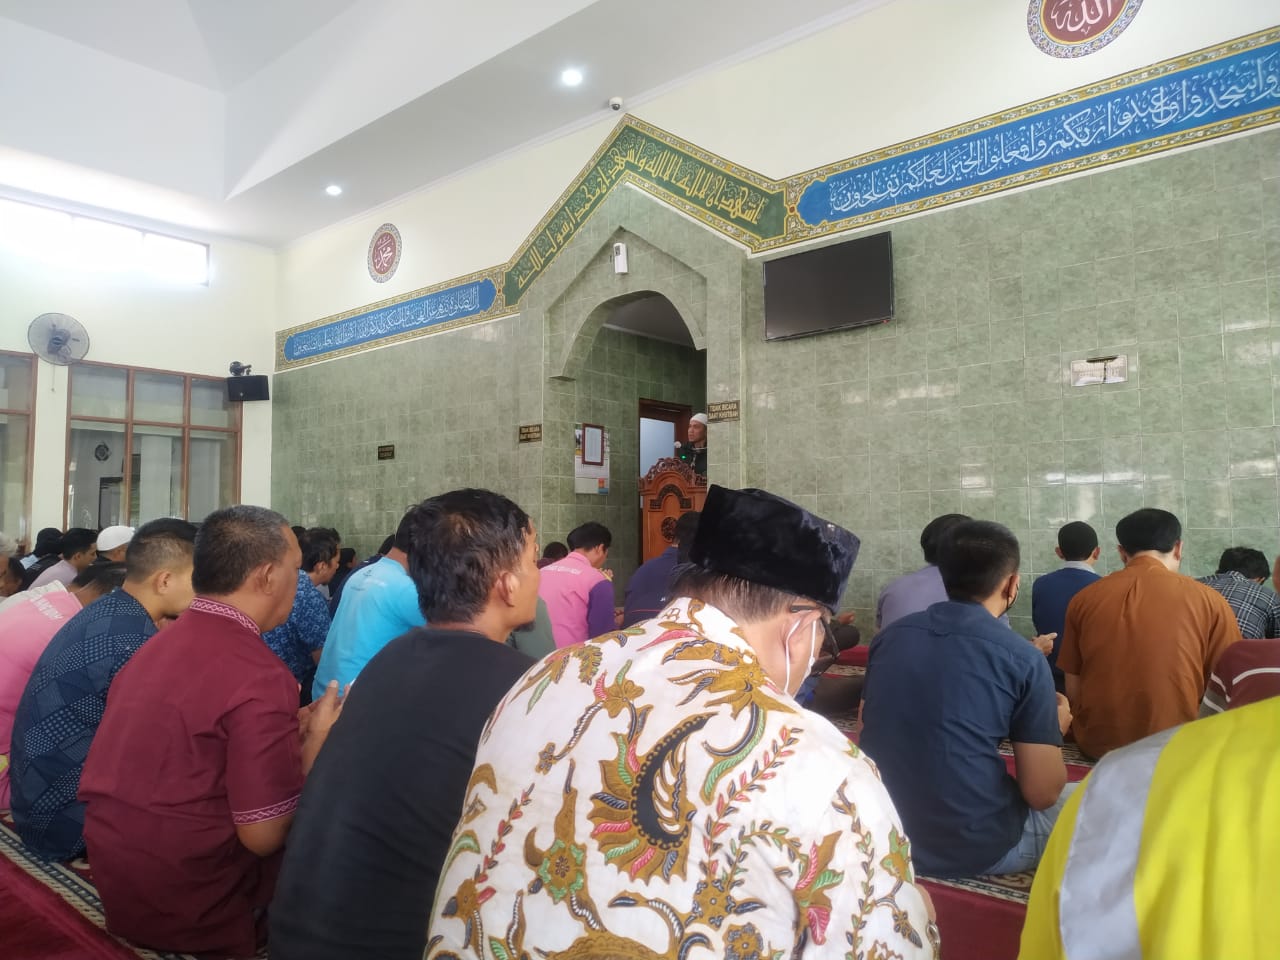 Jumat Pertama di Tahun 2023, Kabalai BDK Bandung menjadi Imam dan Khotib di Masjid Miftahul Ulum BDK Bandung